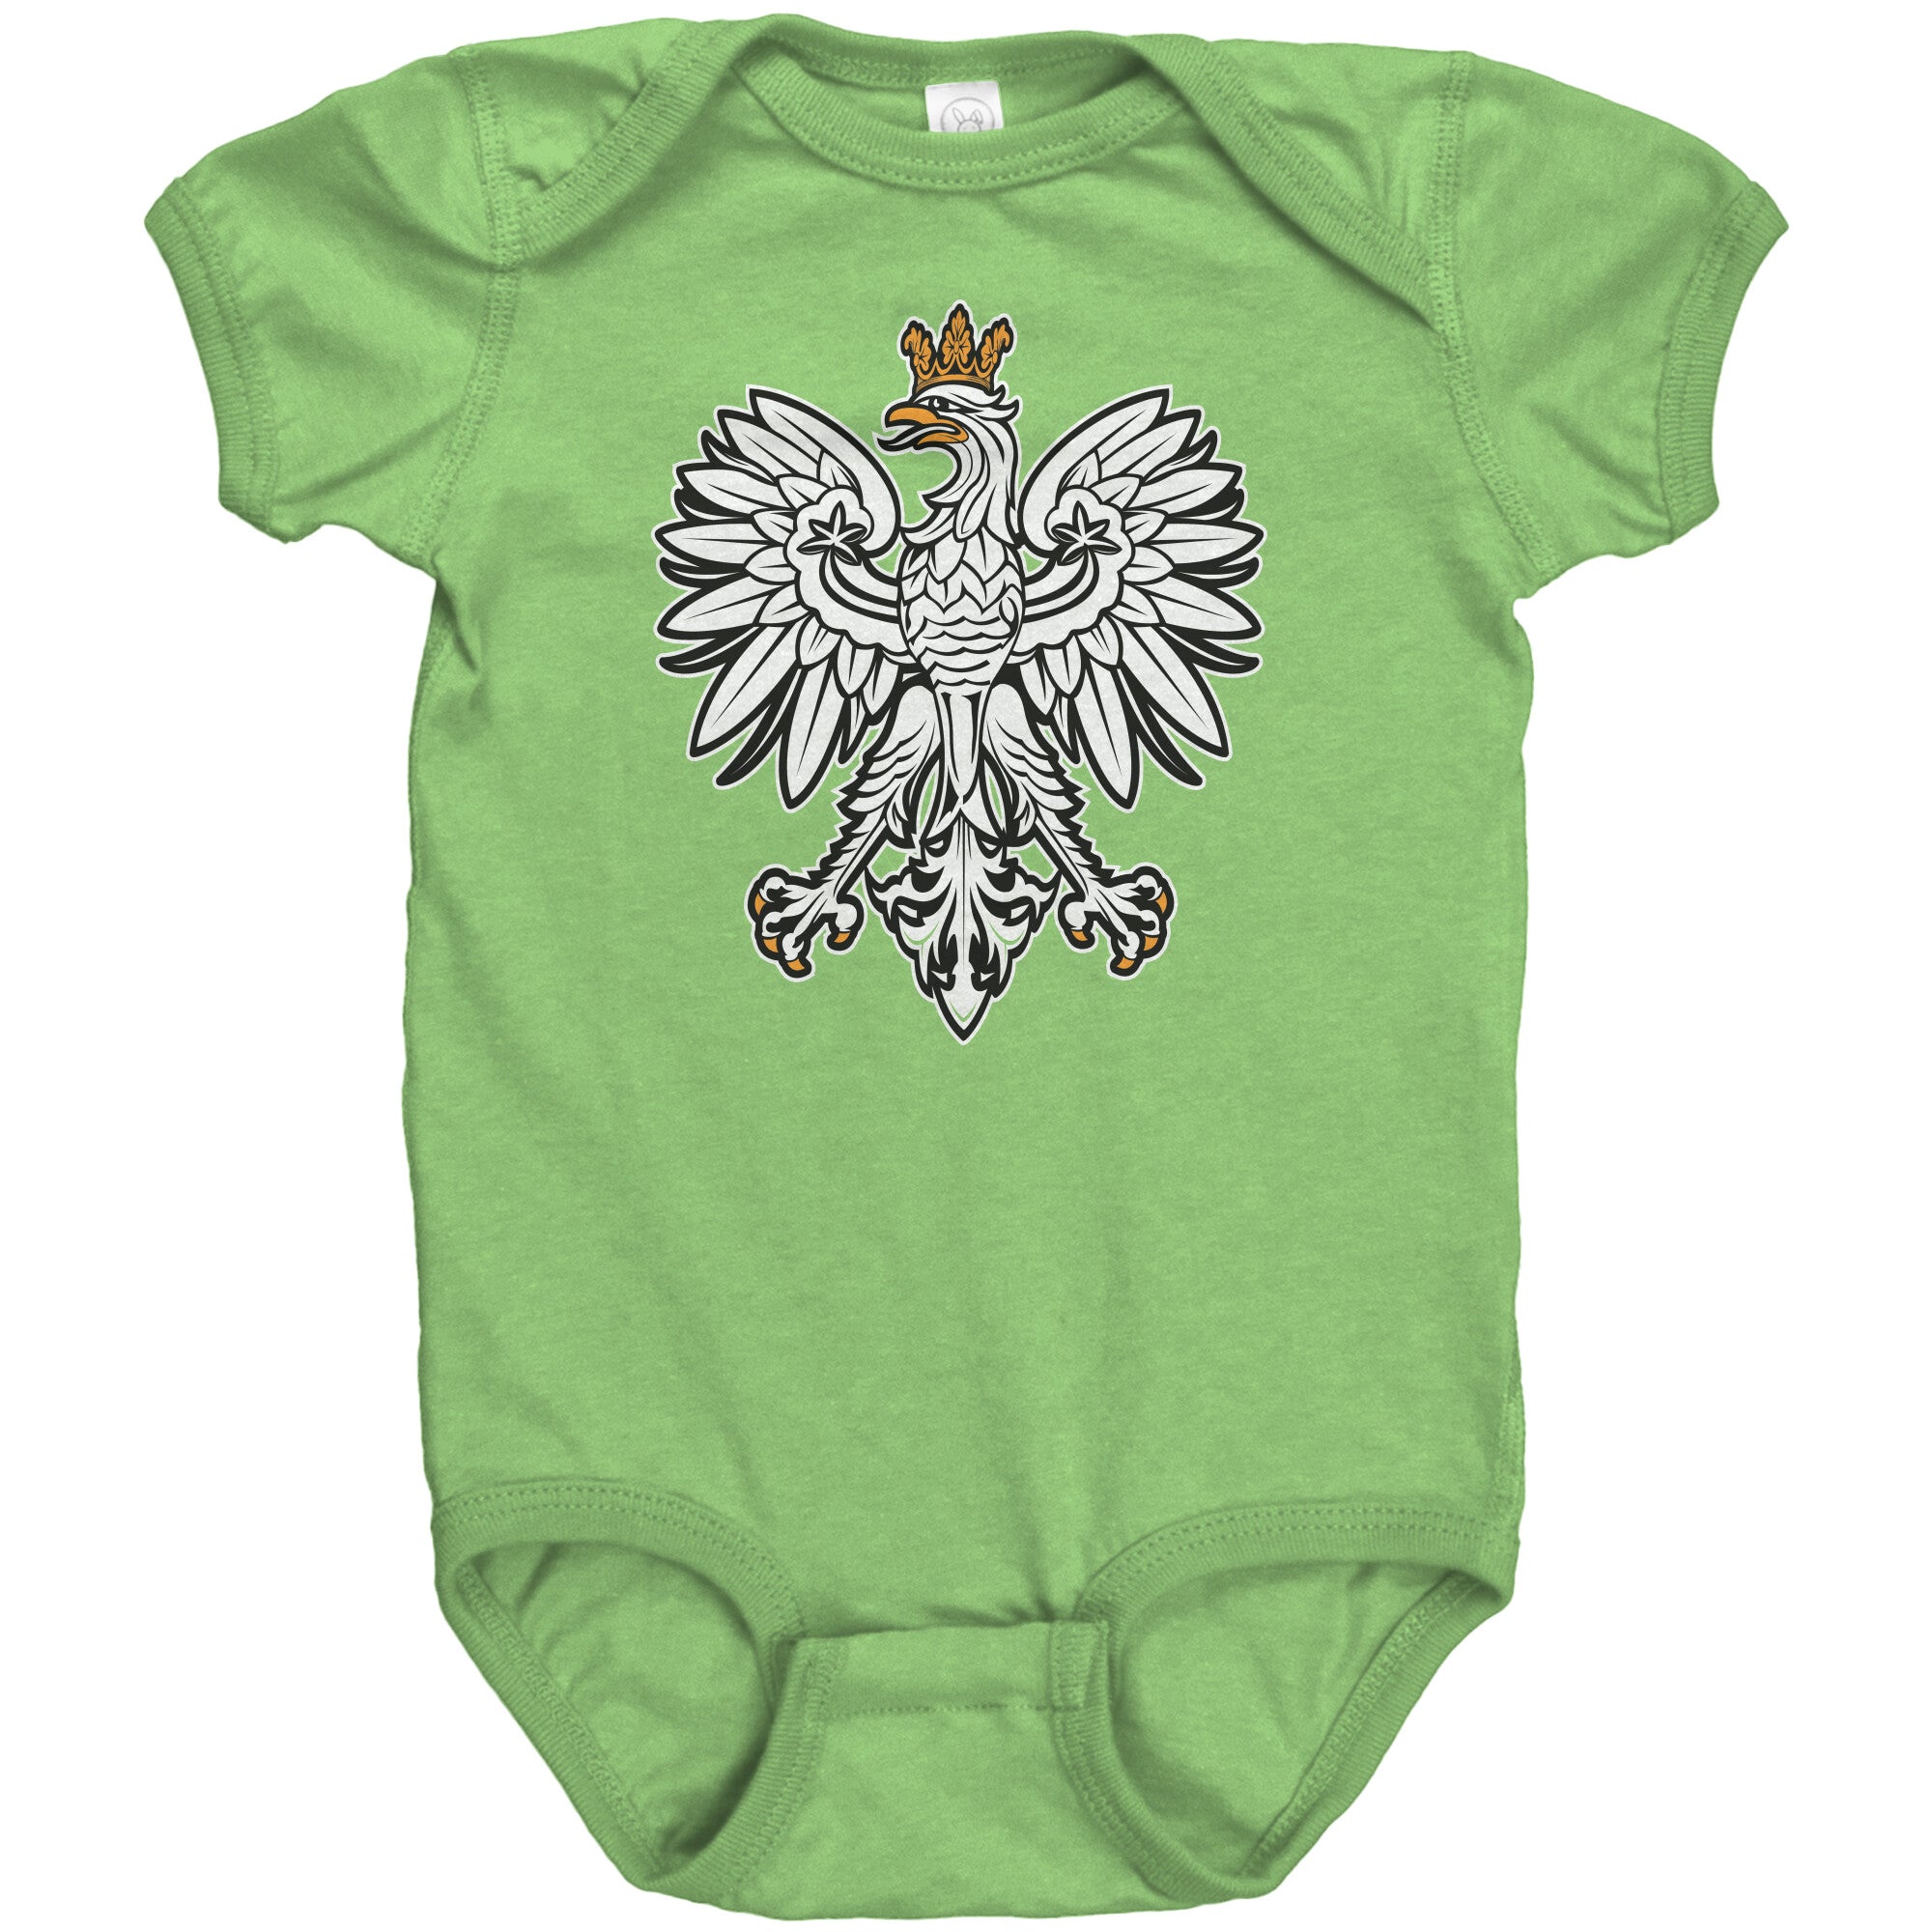 Polish eagle baby bodysuit – My Polish Heritage